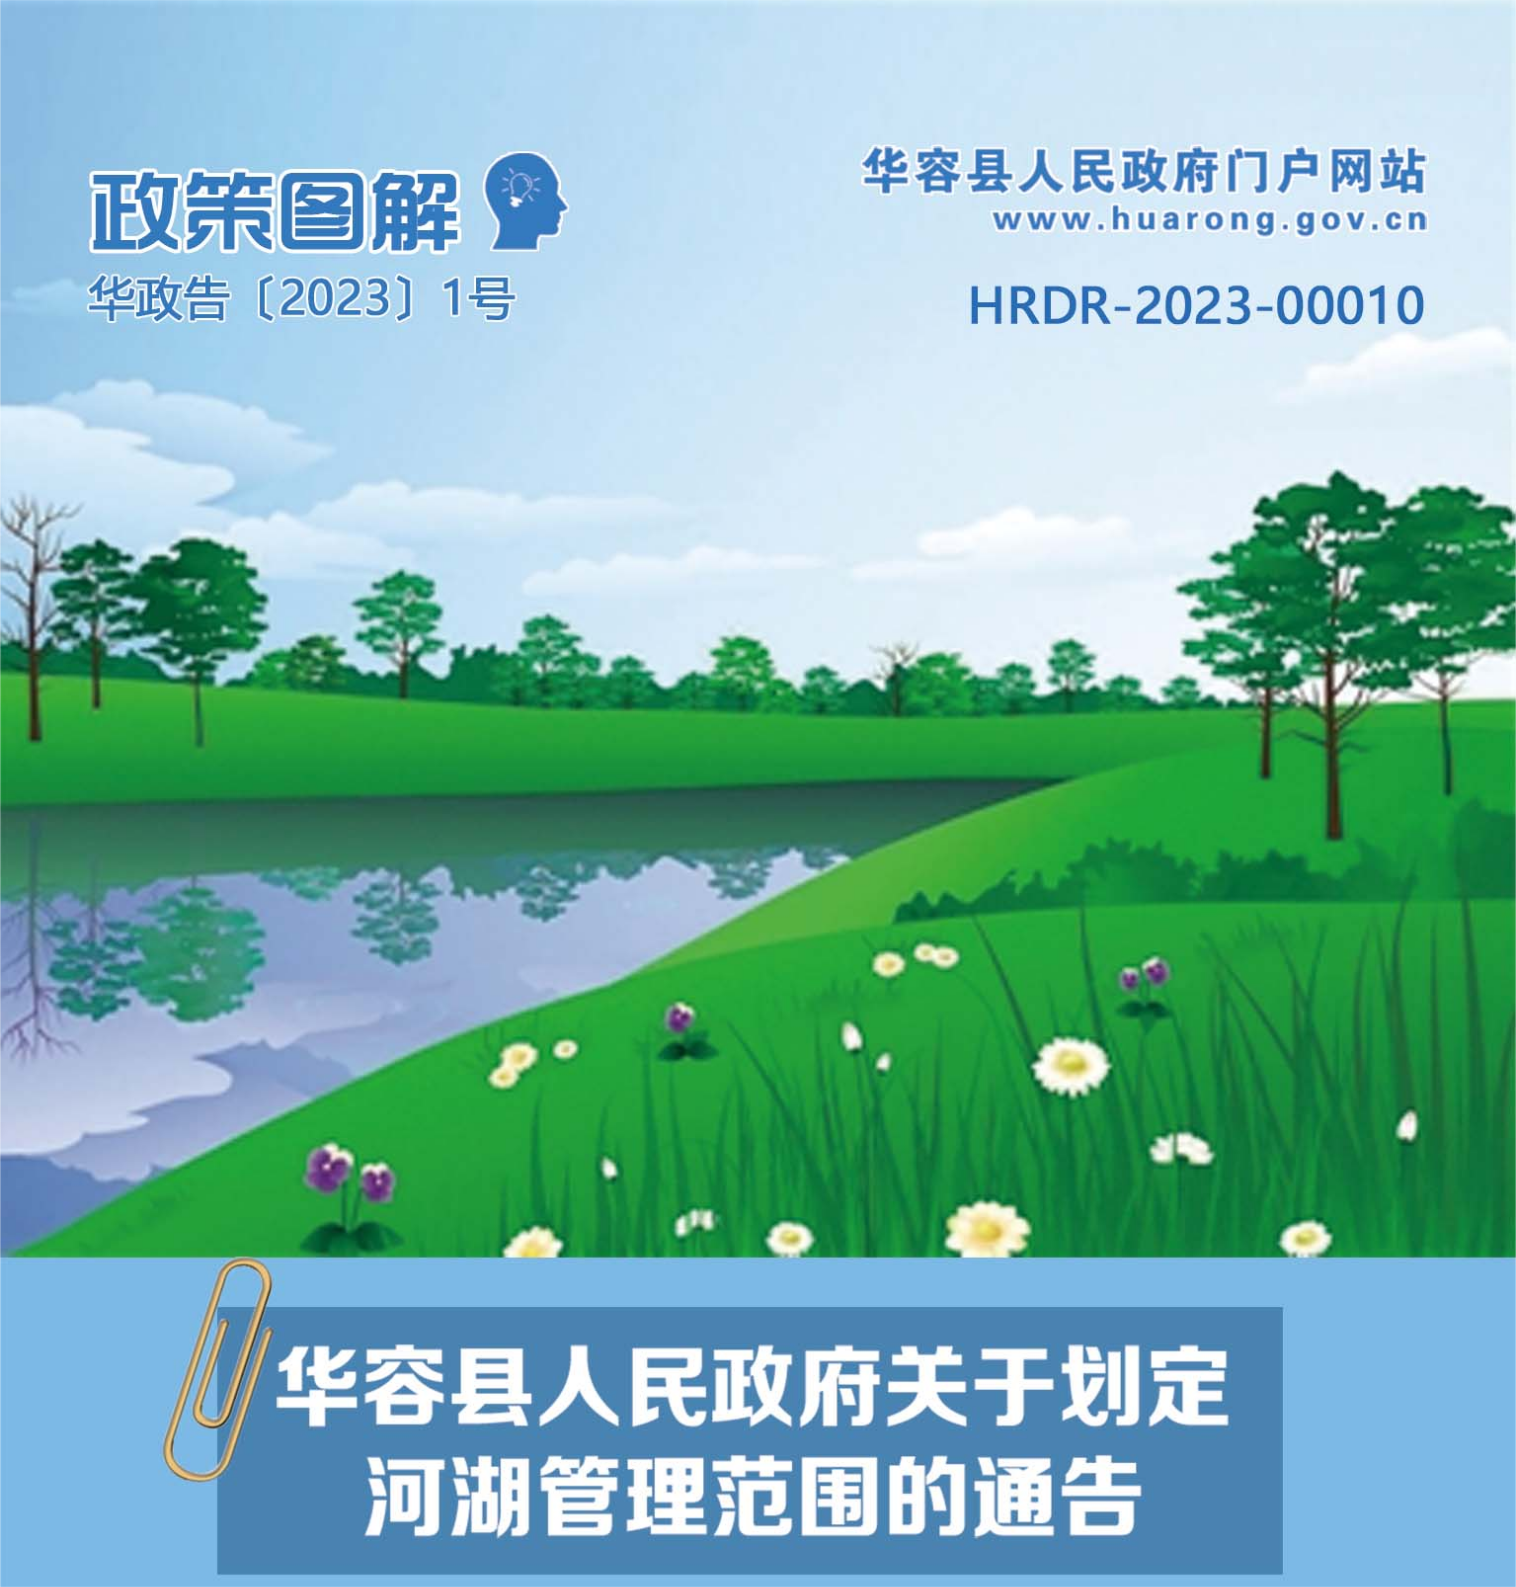 一图读懂《华容县人民政府关于划定河湖管理范围的通告》